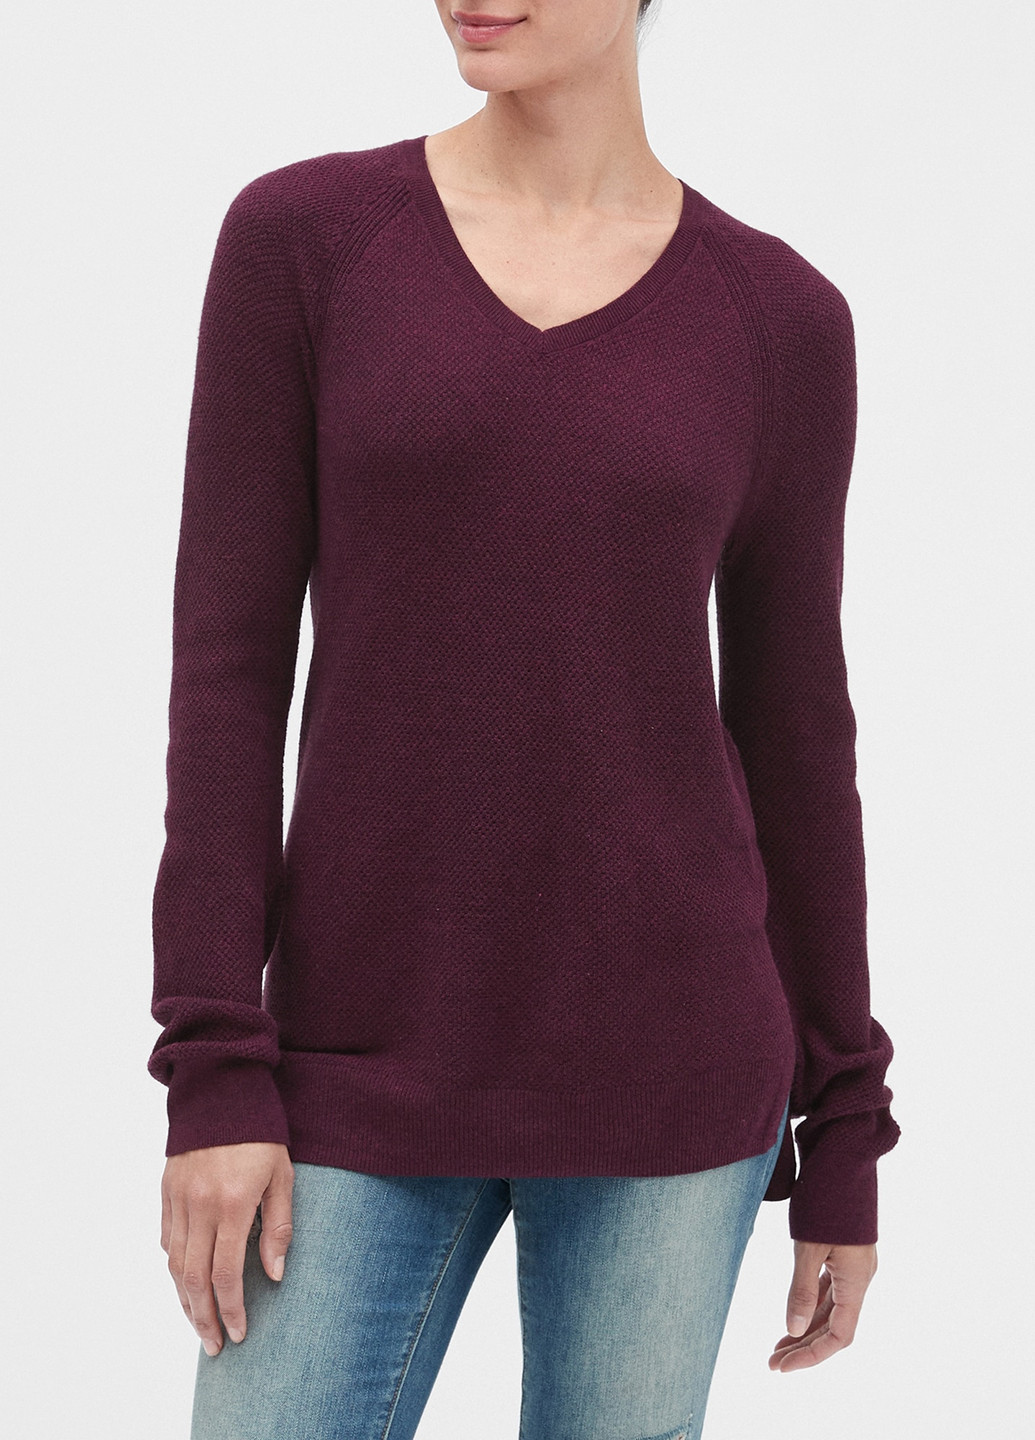 Фиолетовый демисезонный пуловер пуловер Gap